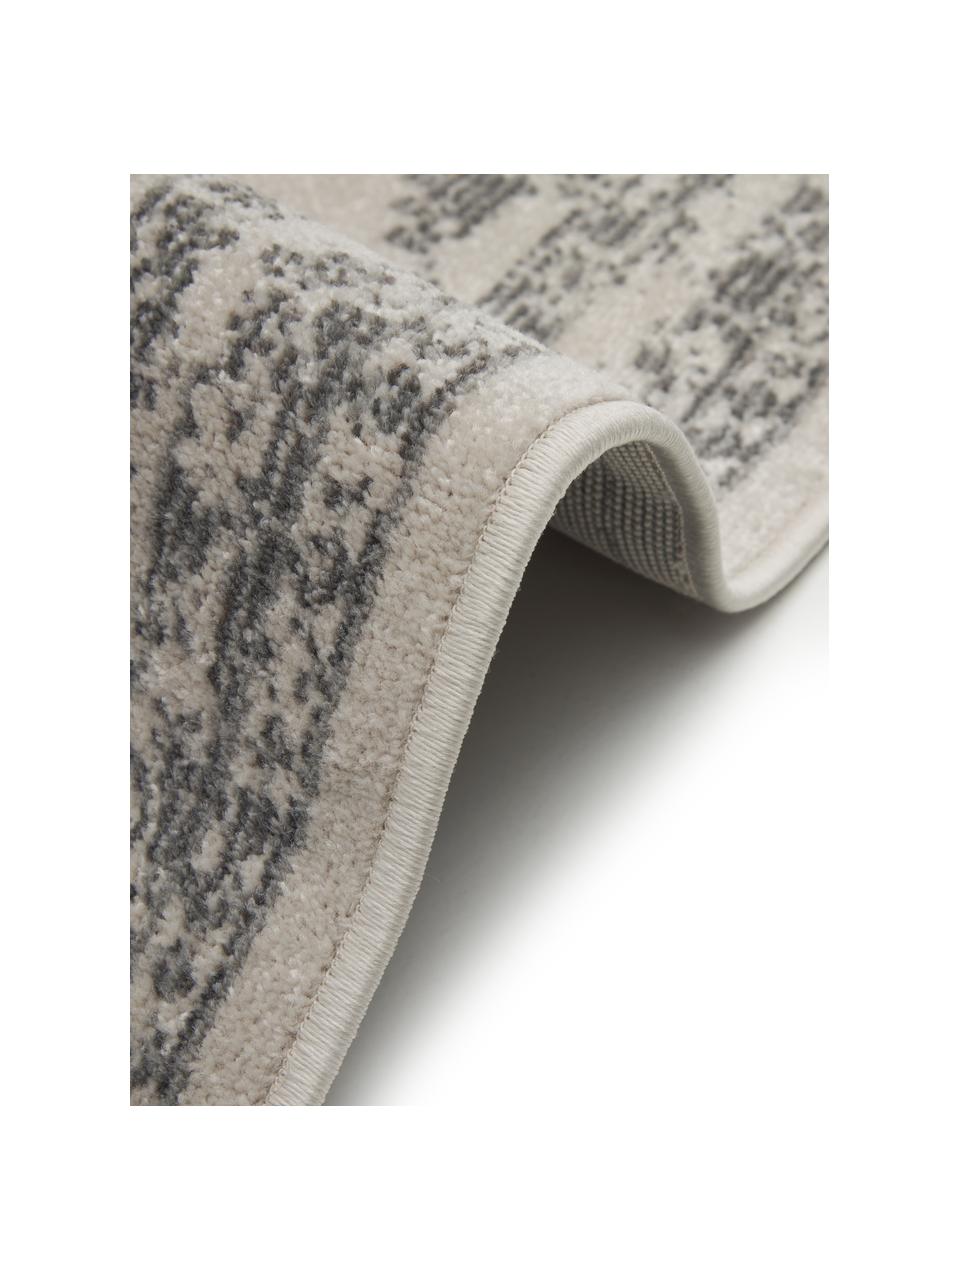 Tappeto vintage grigio da interno-esterno Everly, 100% polipropilene, Grigio, Larg. 80 x Lung. 150 cm (taglia XS)